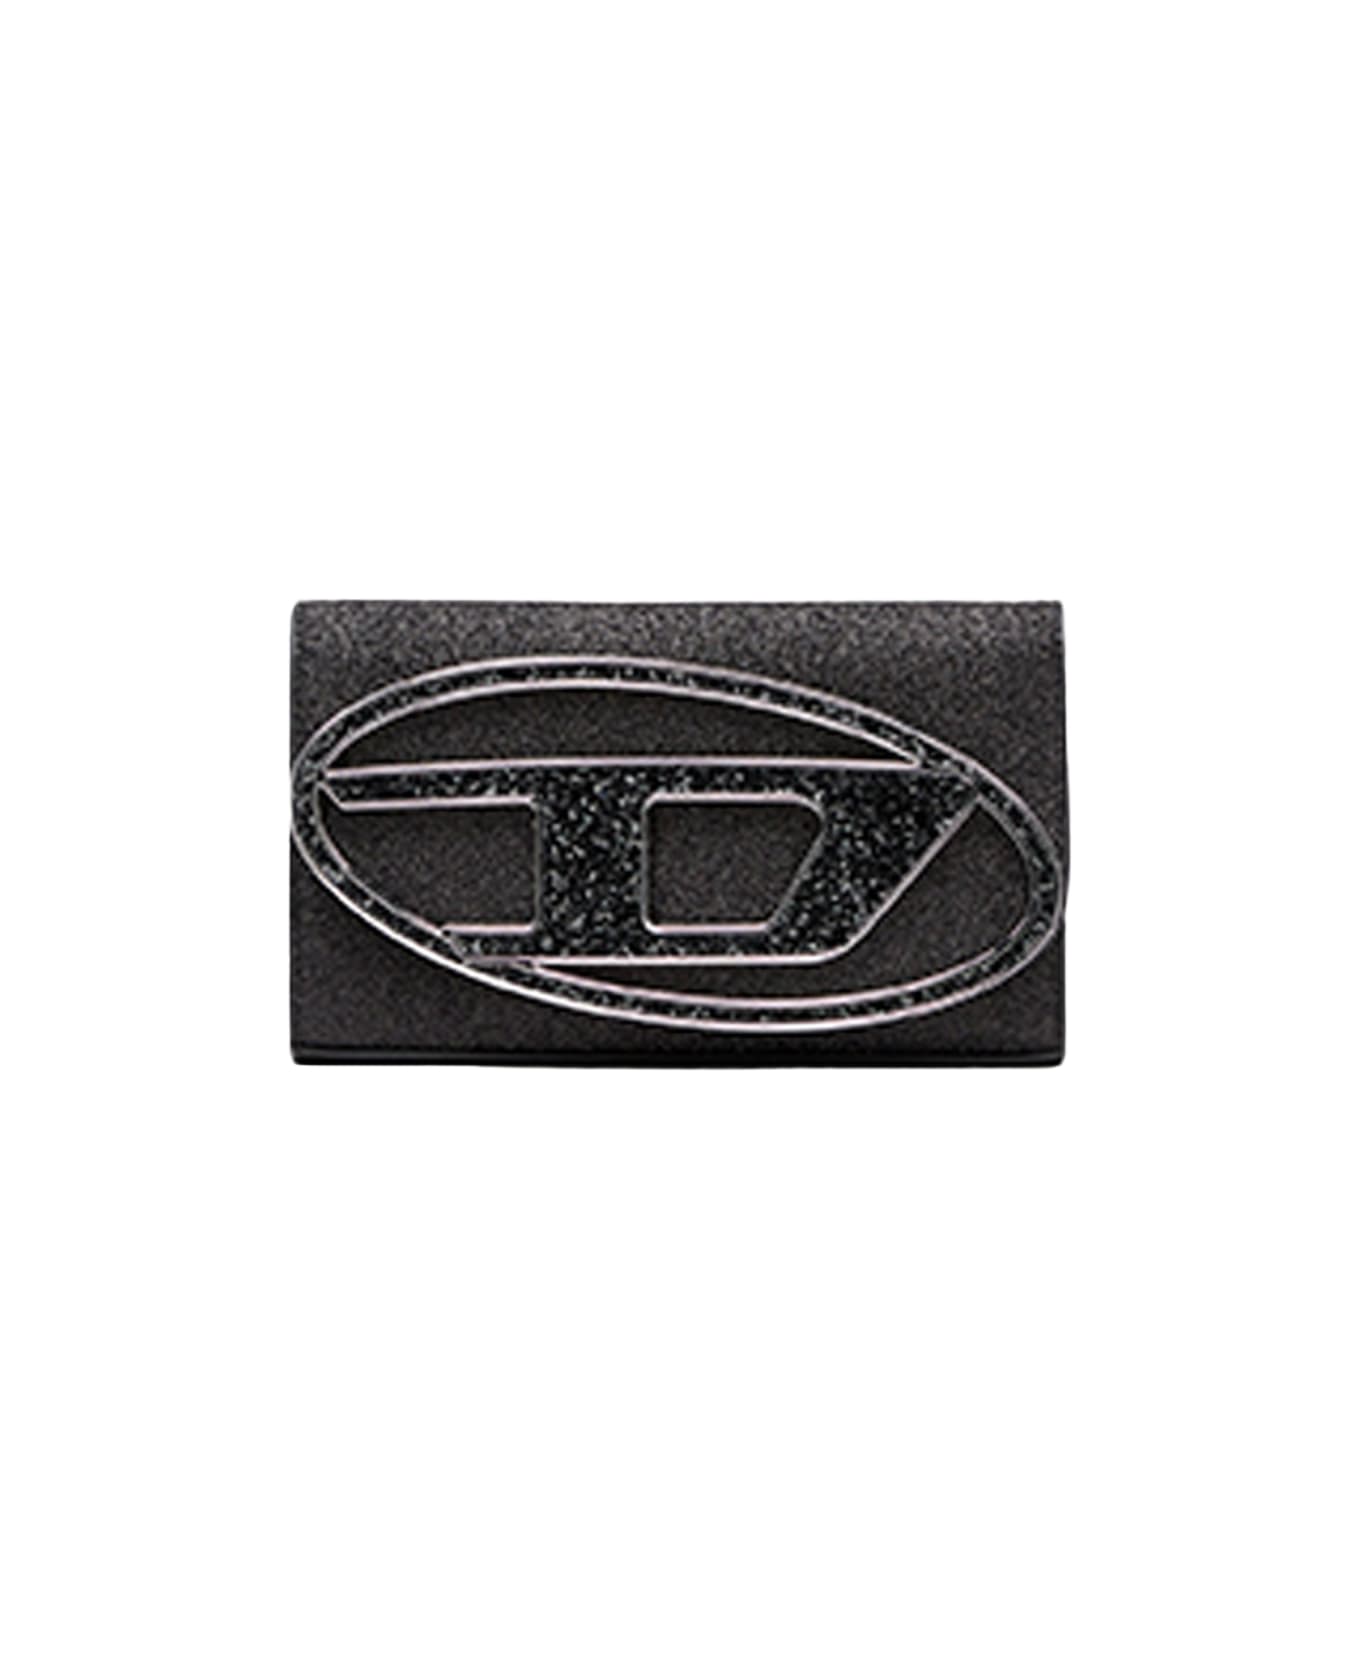 Diesel 1dr 1dr Wallet Strap Sparkly Black Purse With Shoulder Strap - 1dr Wallet Strap - Nero